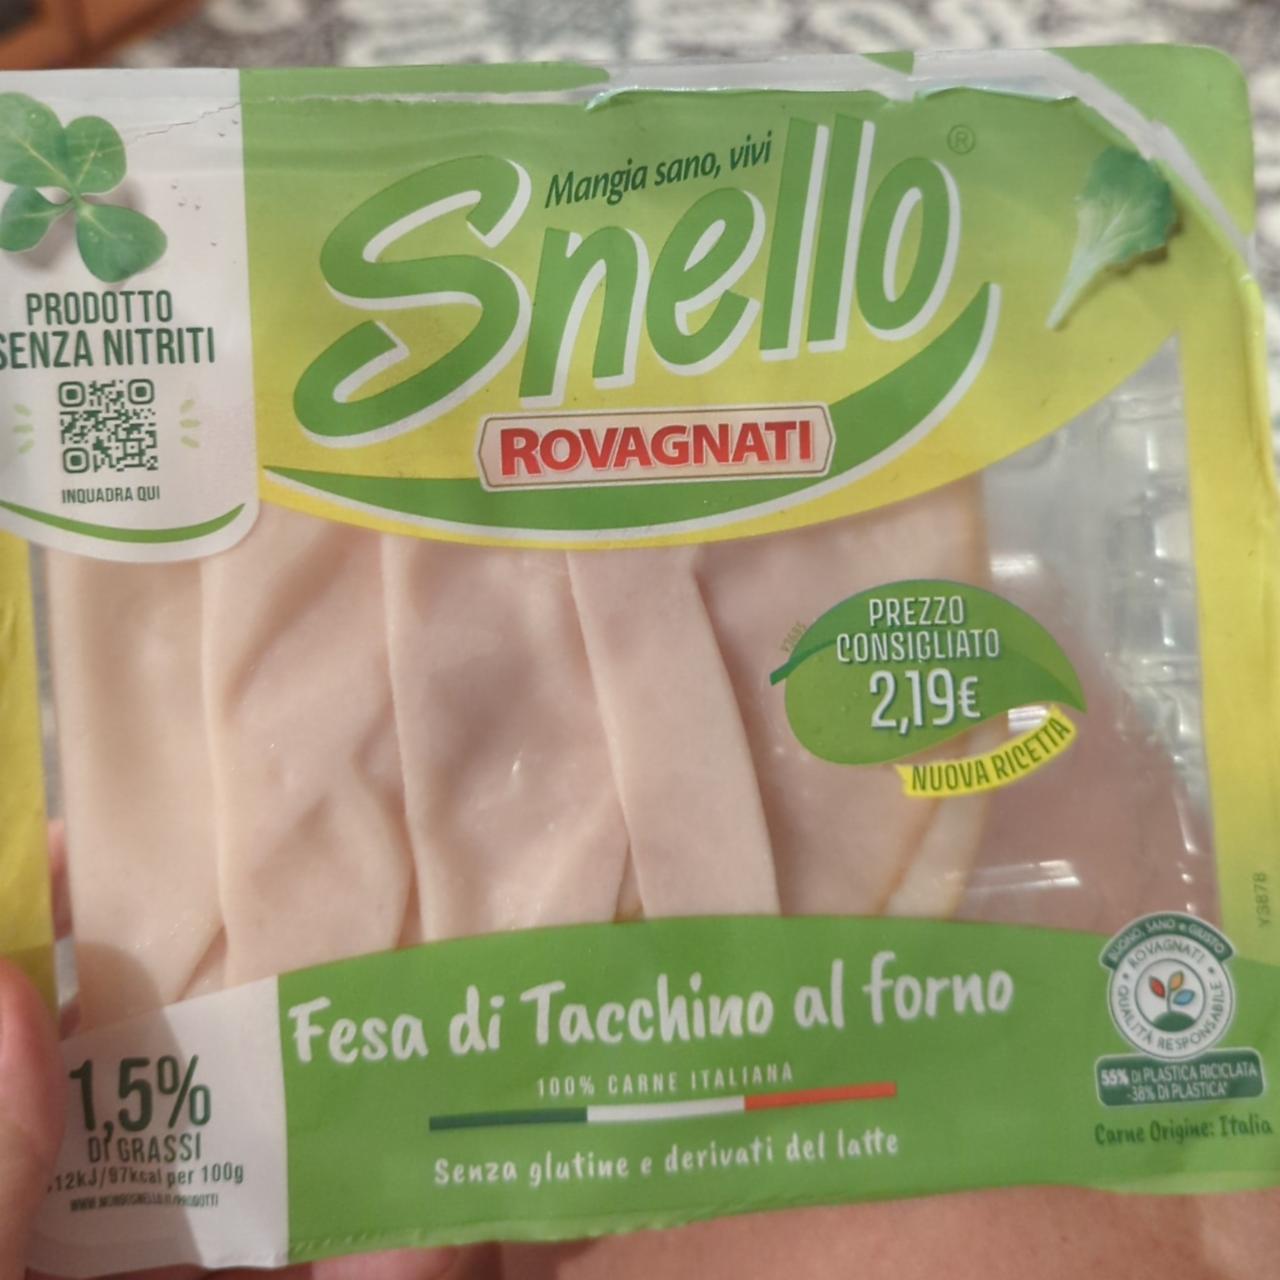 Fotografie - Rovagnati Fesa di Tacchino al forno Snello Rovagnati